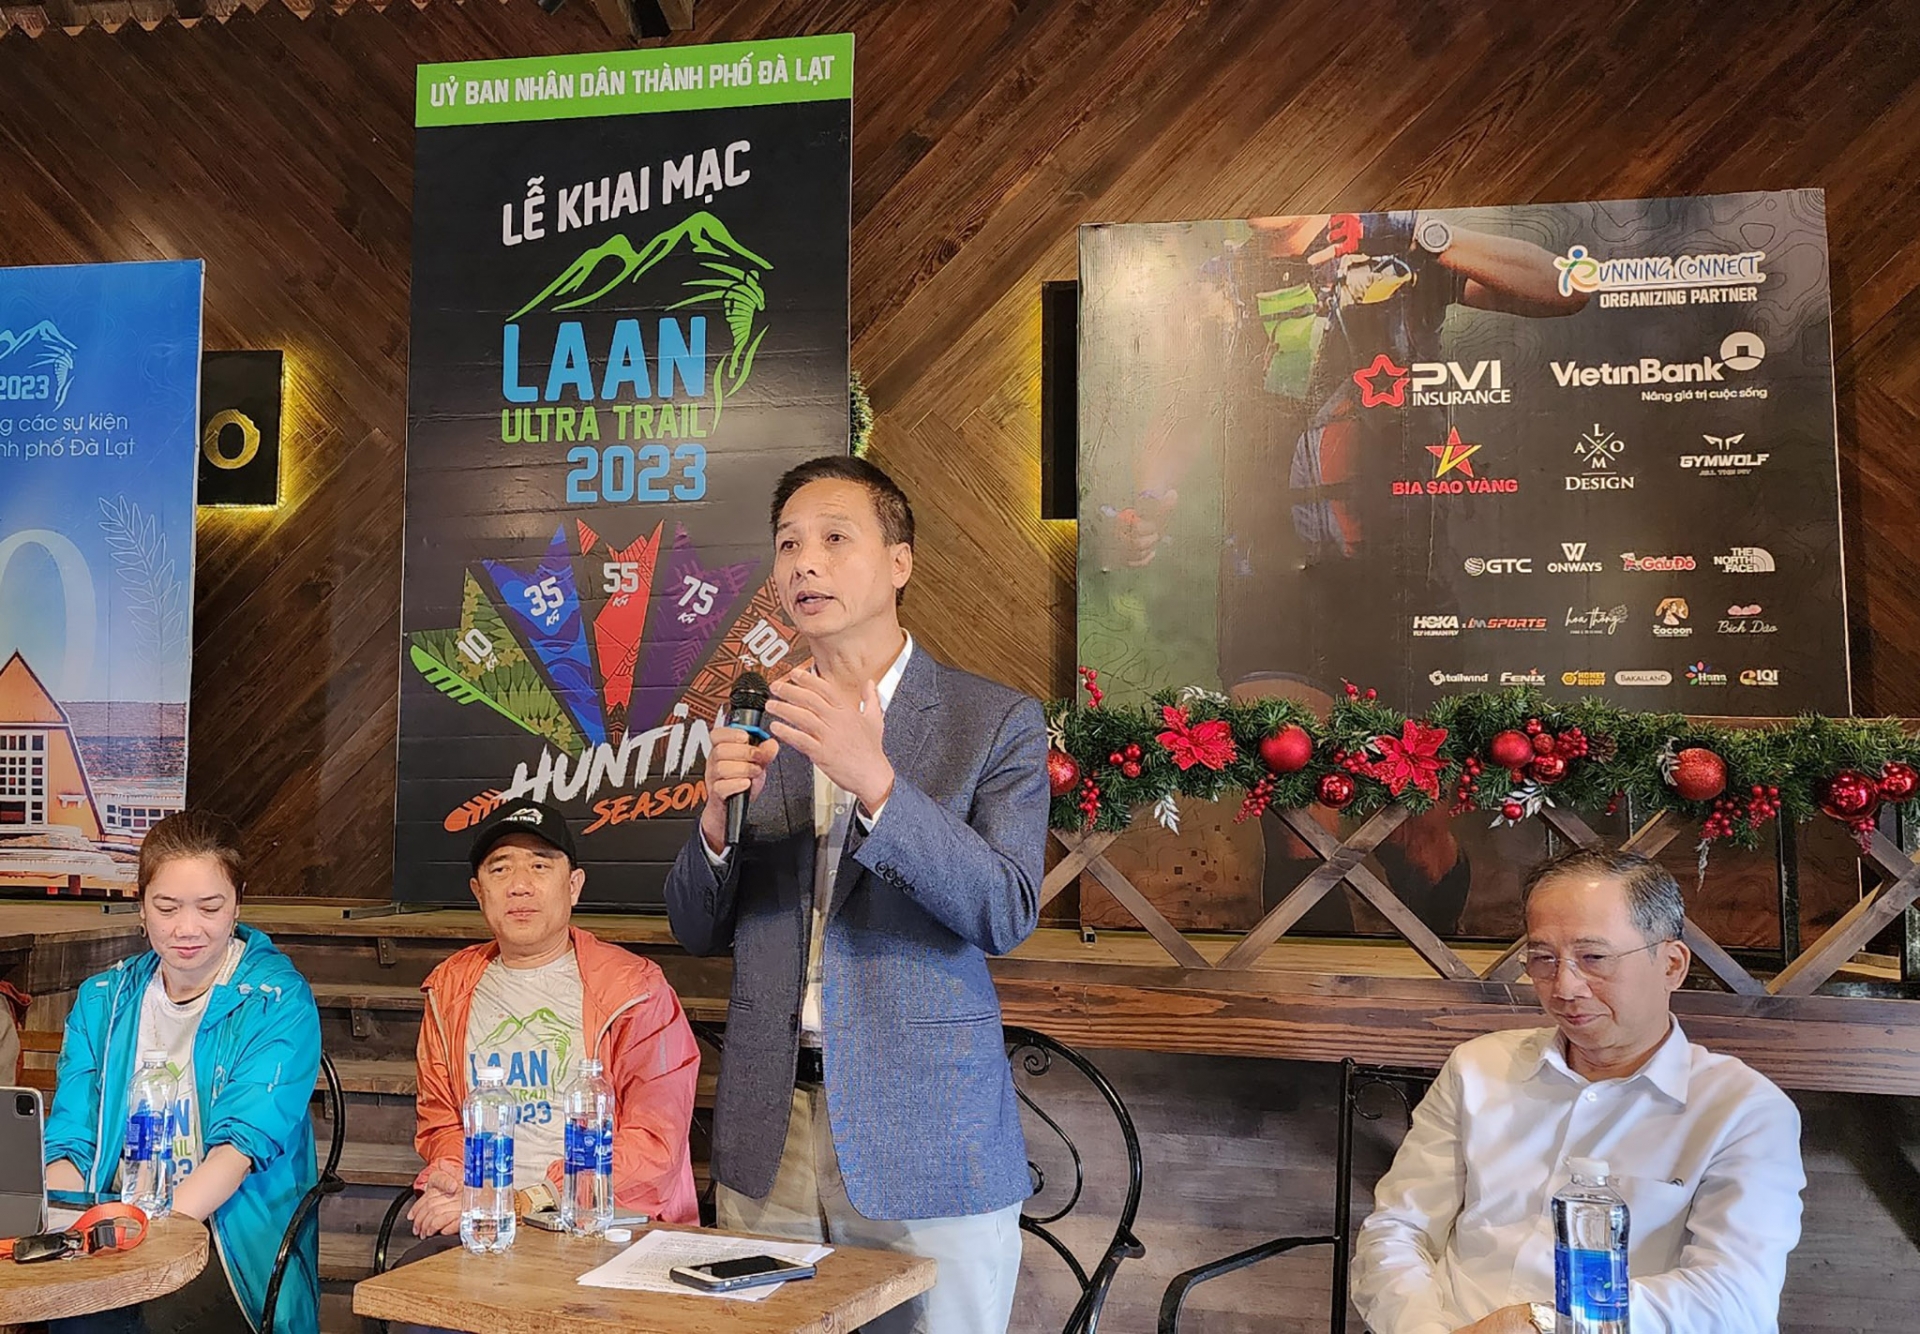 Phó Giám đốc Sở Văn hóa Thể thao và Du lịch Lâm Đồng đánh giá cao công tác tổ chức giải chạy lần này